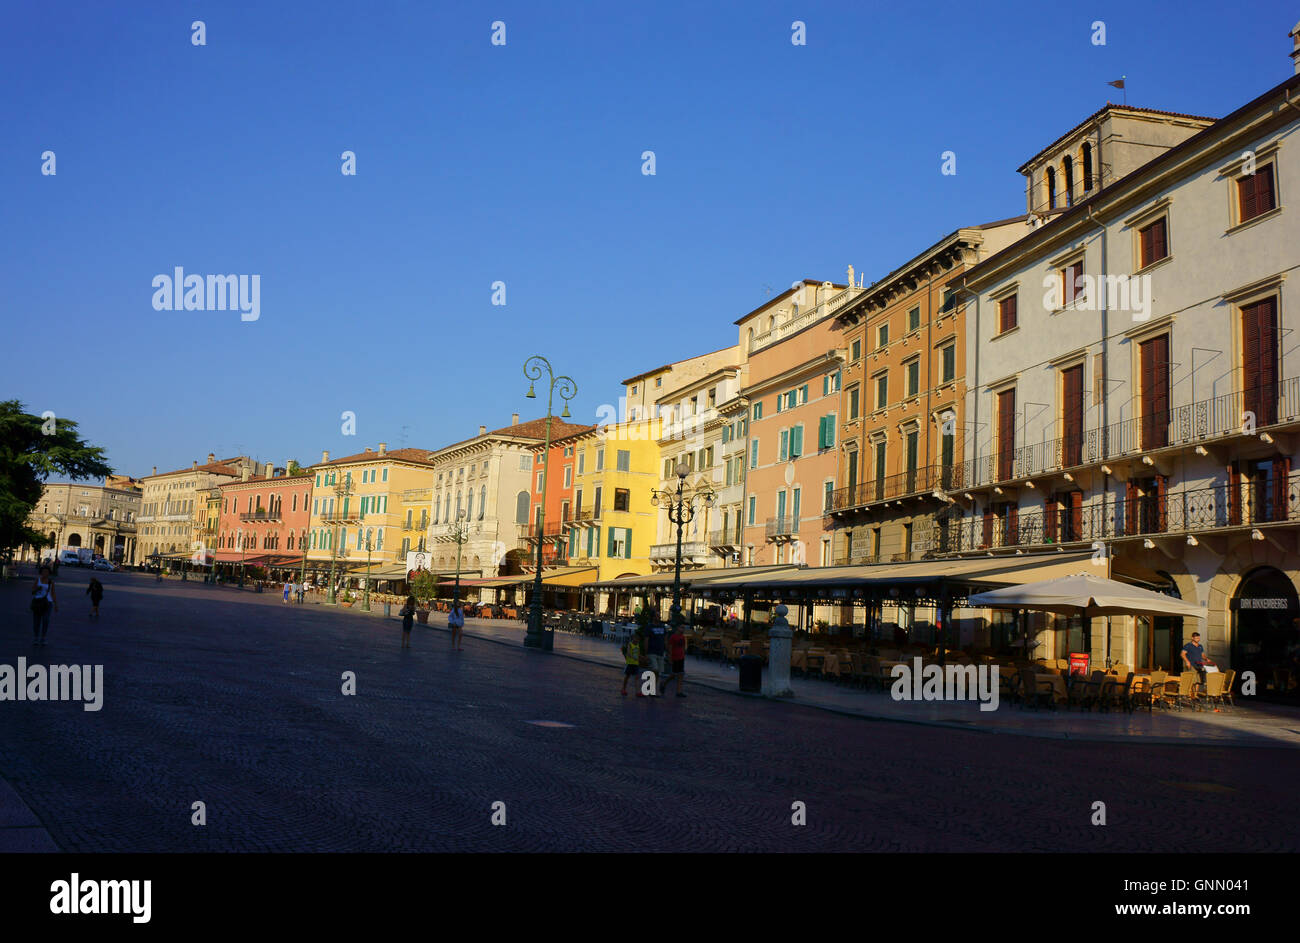 Häuser und Restaurants an der Piazza Bra, früh morgens, Verona Italien Stockfoto